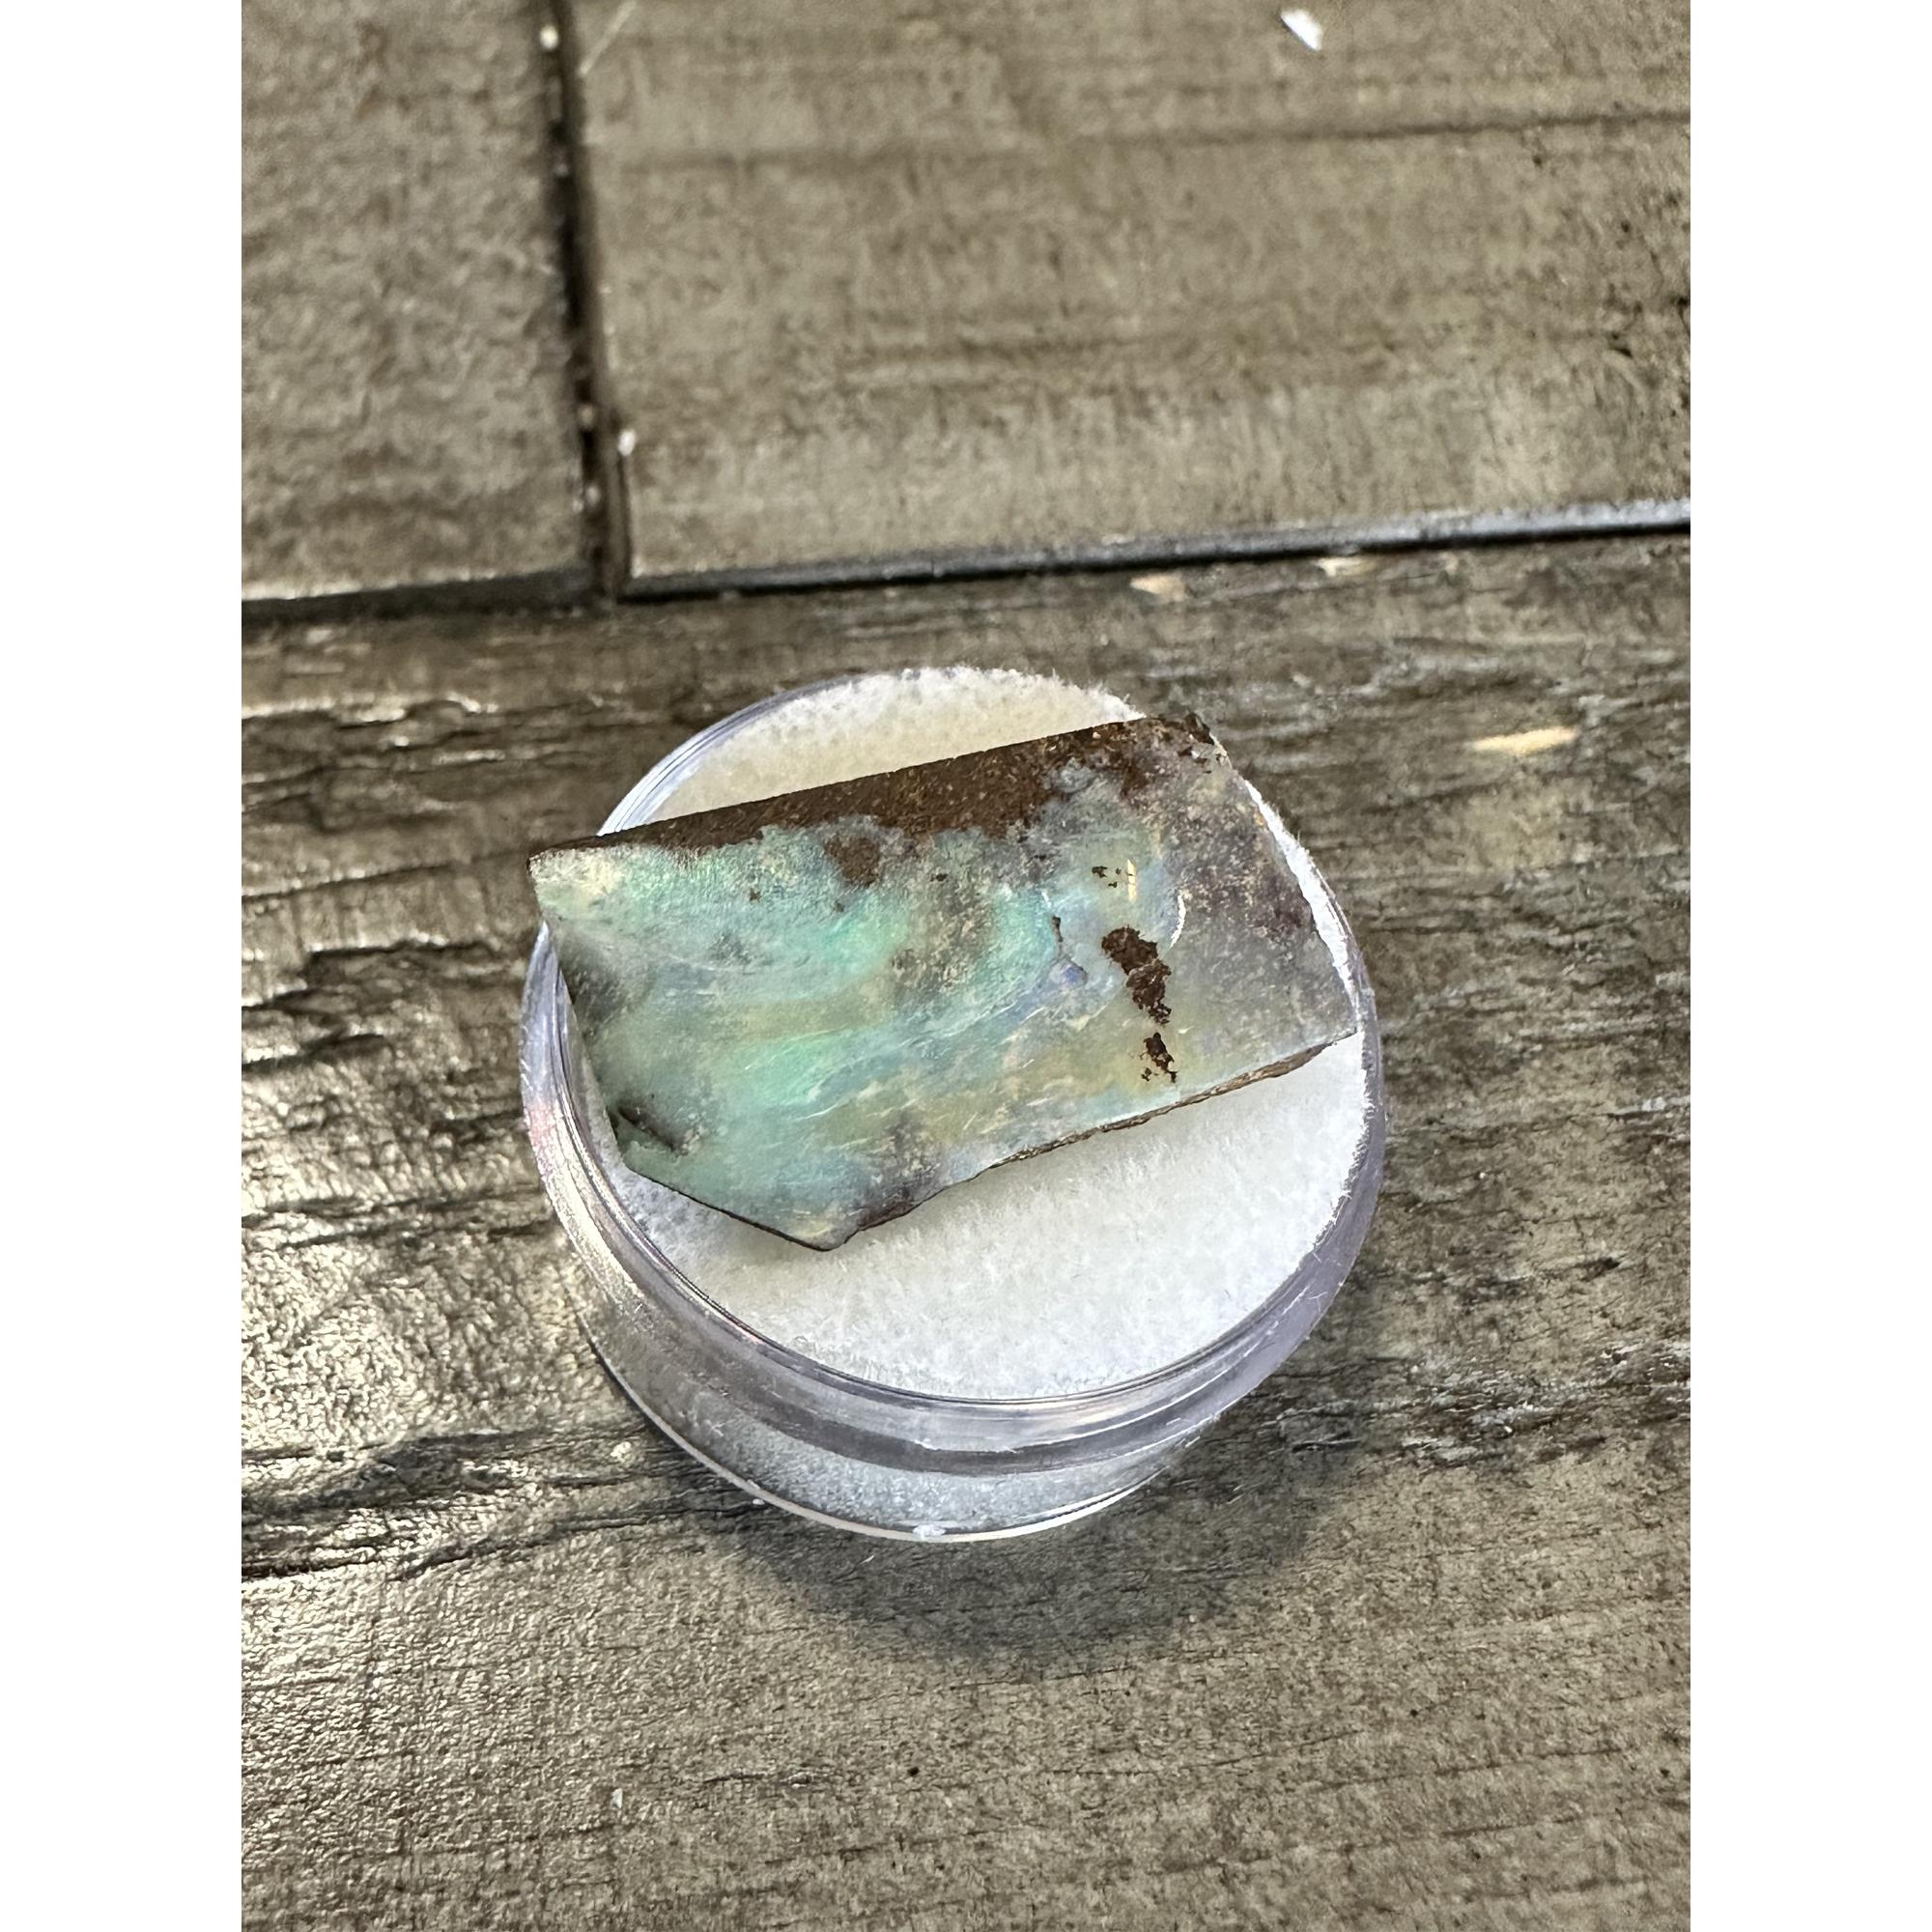 Opal, boulder, Australia, spectacular color Prehistoric Online